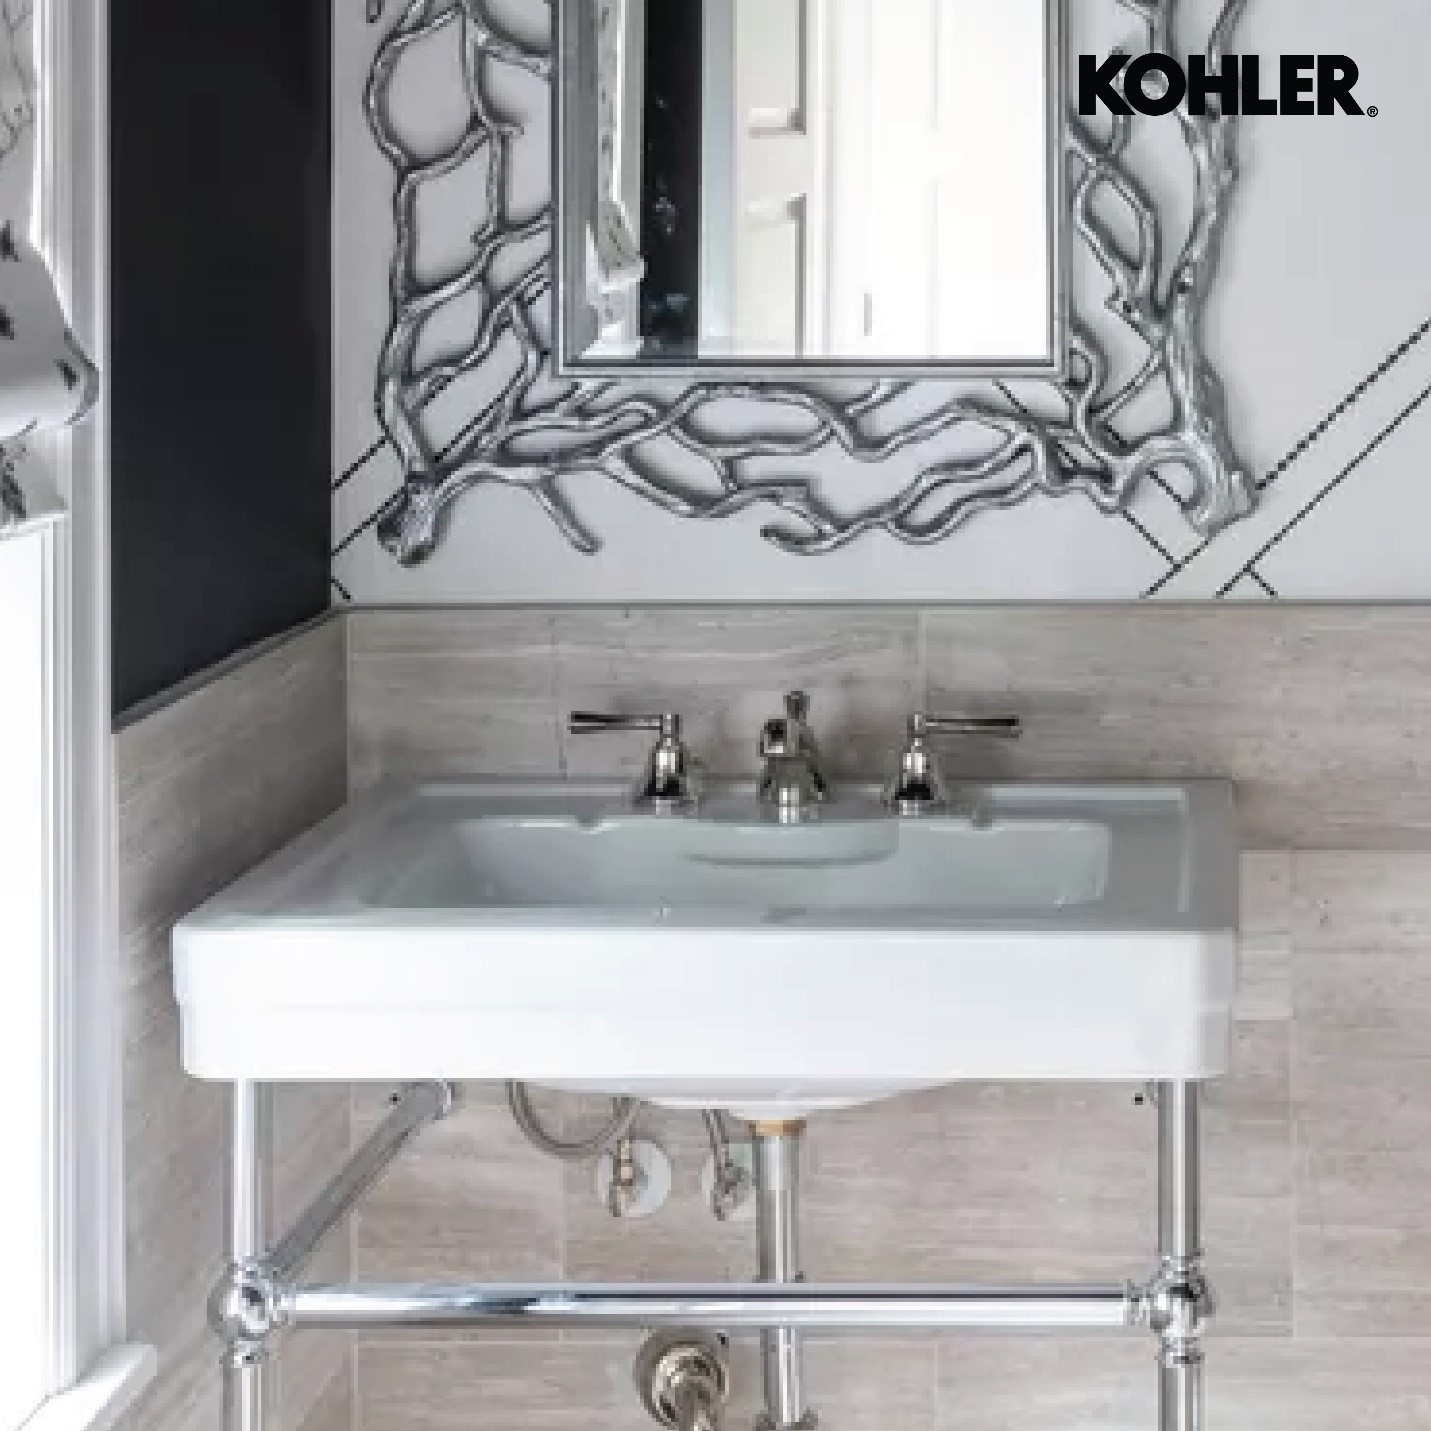 Kohler frame mirror